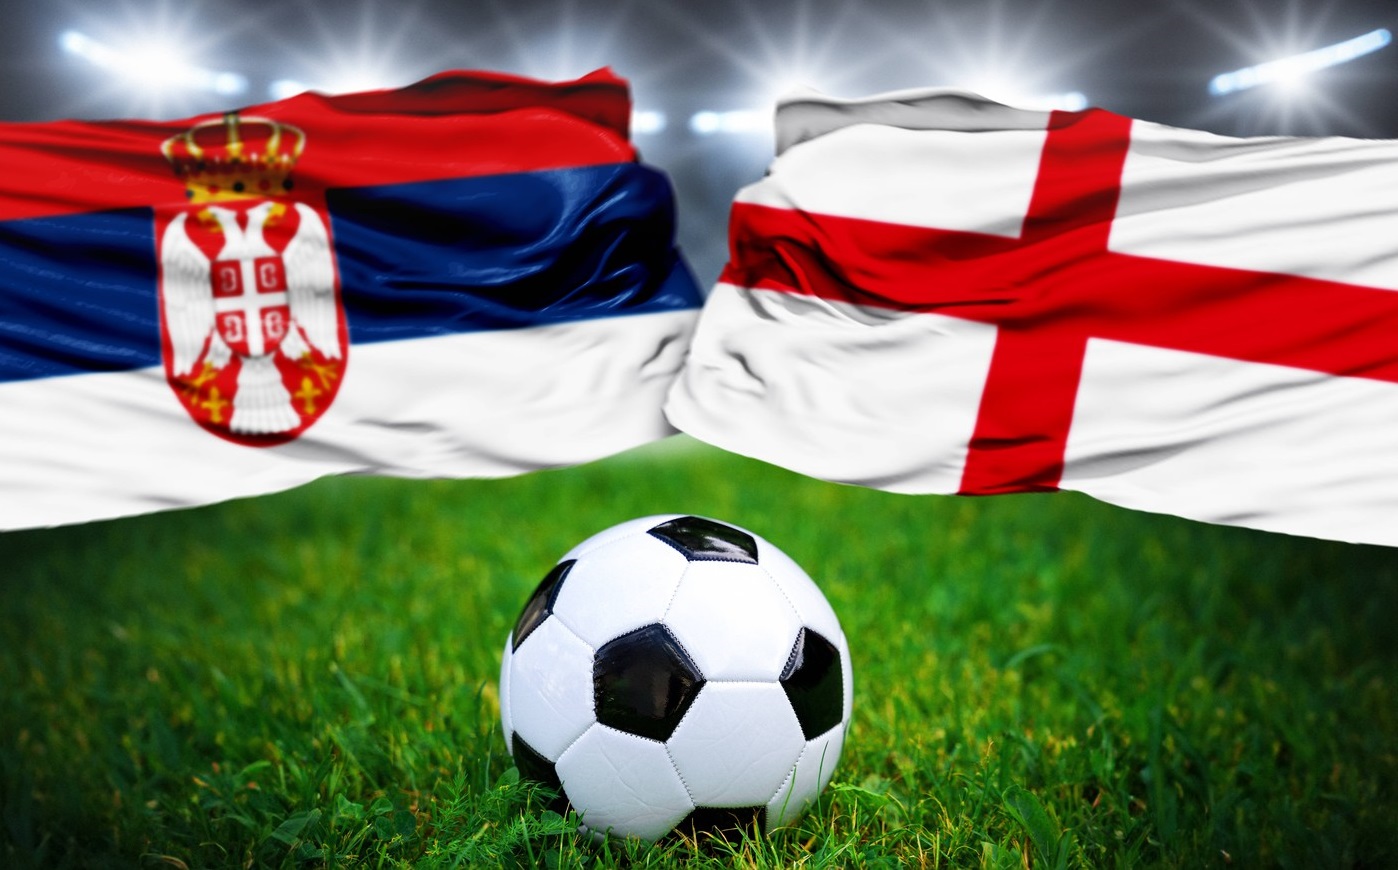 Serbia - Anglia, 22:00, LIVE TEXT pe digisport.ro. Confruntare istorică! Primul meci direct dintre cele două țări